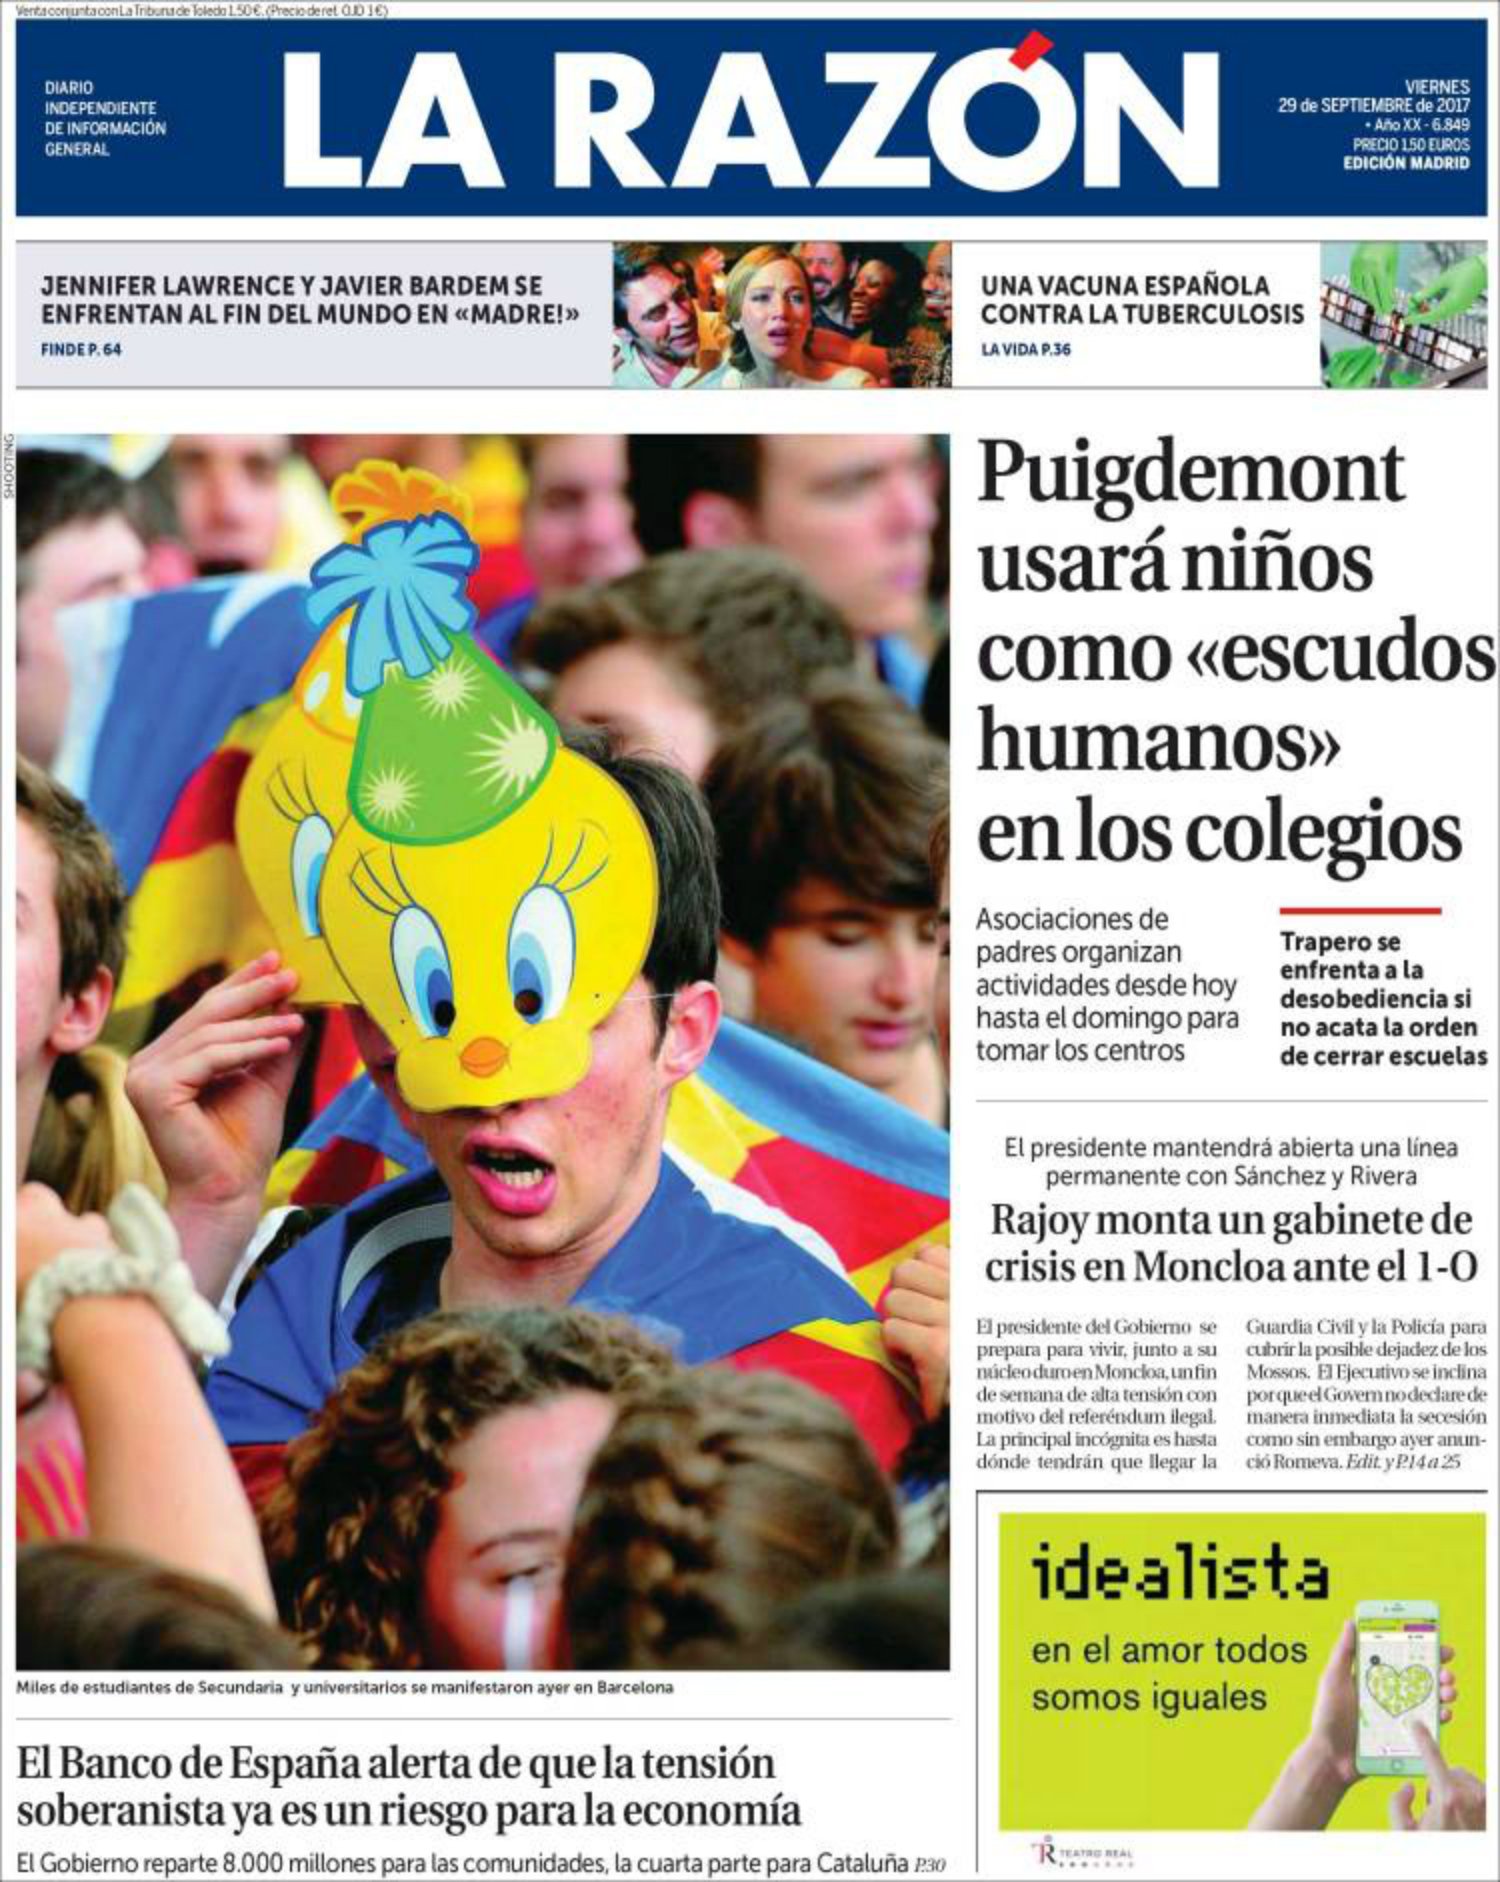 Les mentides de 'La Razón' comencen a la portada: "Puigdemont utilitzarà nens com a escuts humans"